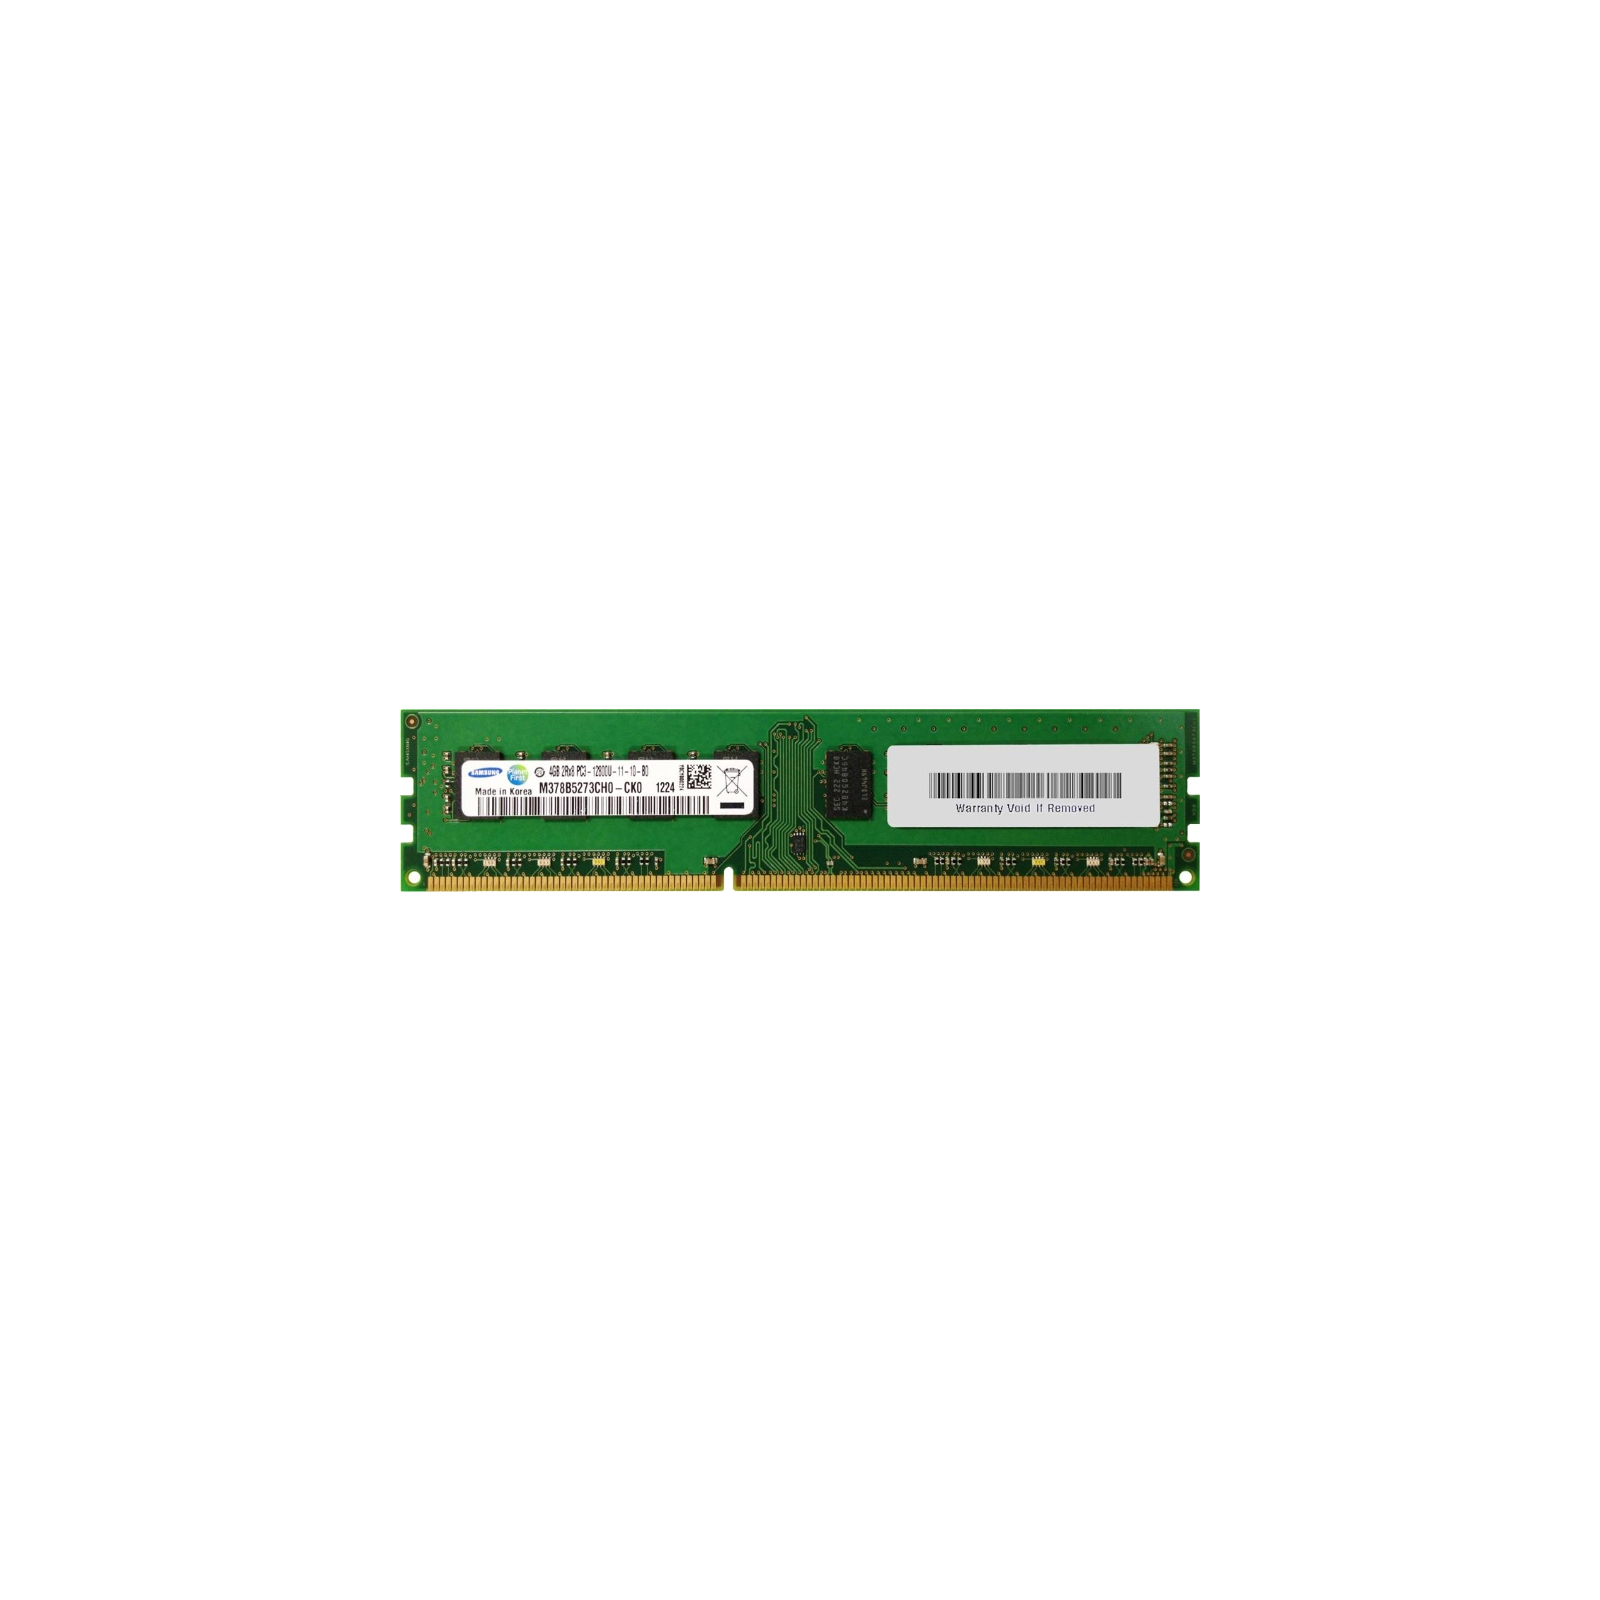 Модуль памяти для компьютера DDR3 4GB 1600 MHz Samsung (M378B5273CH0-CK0)